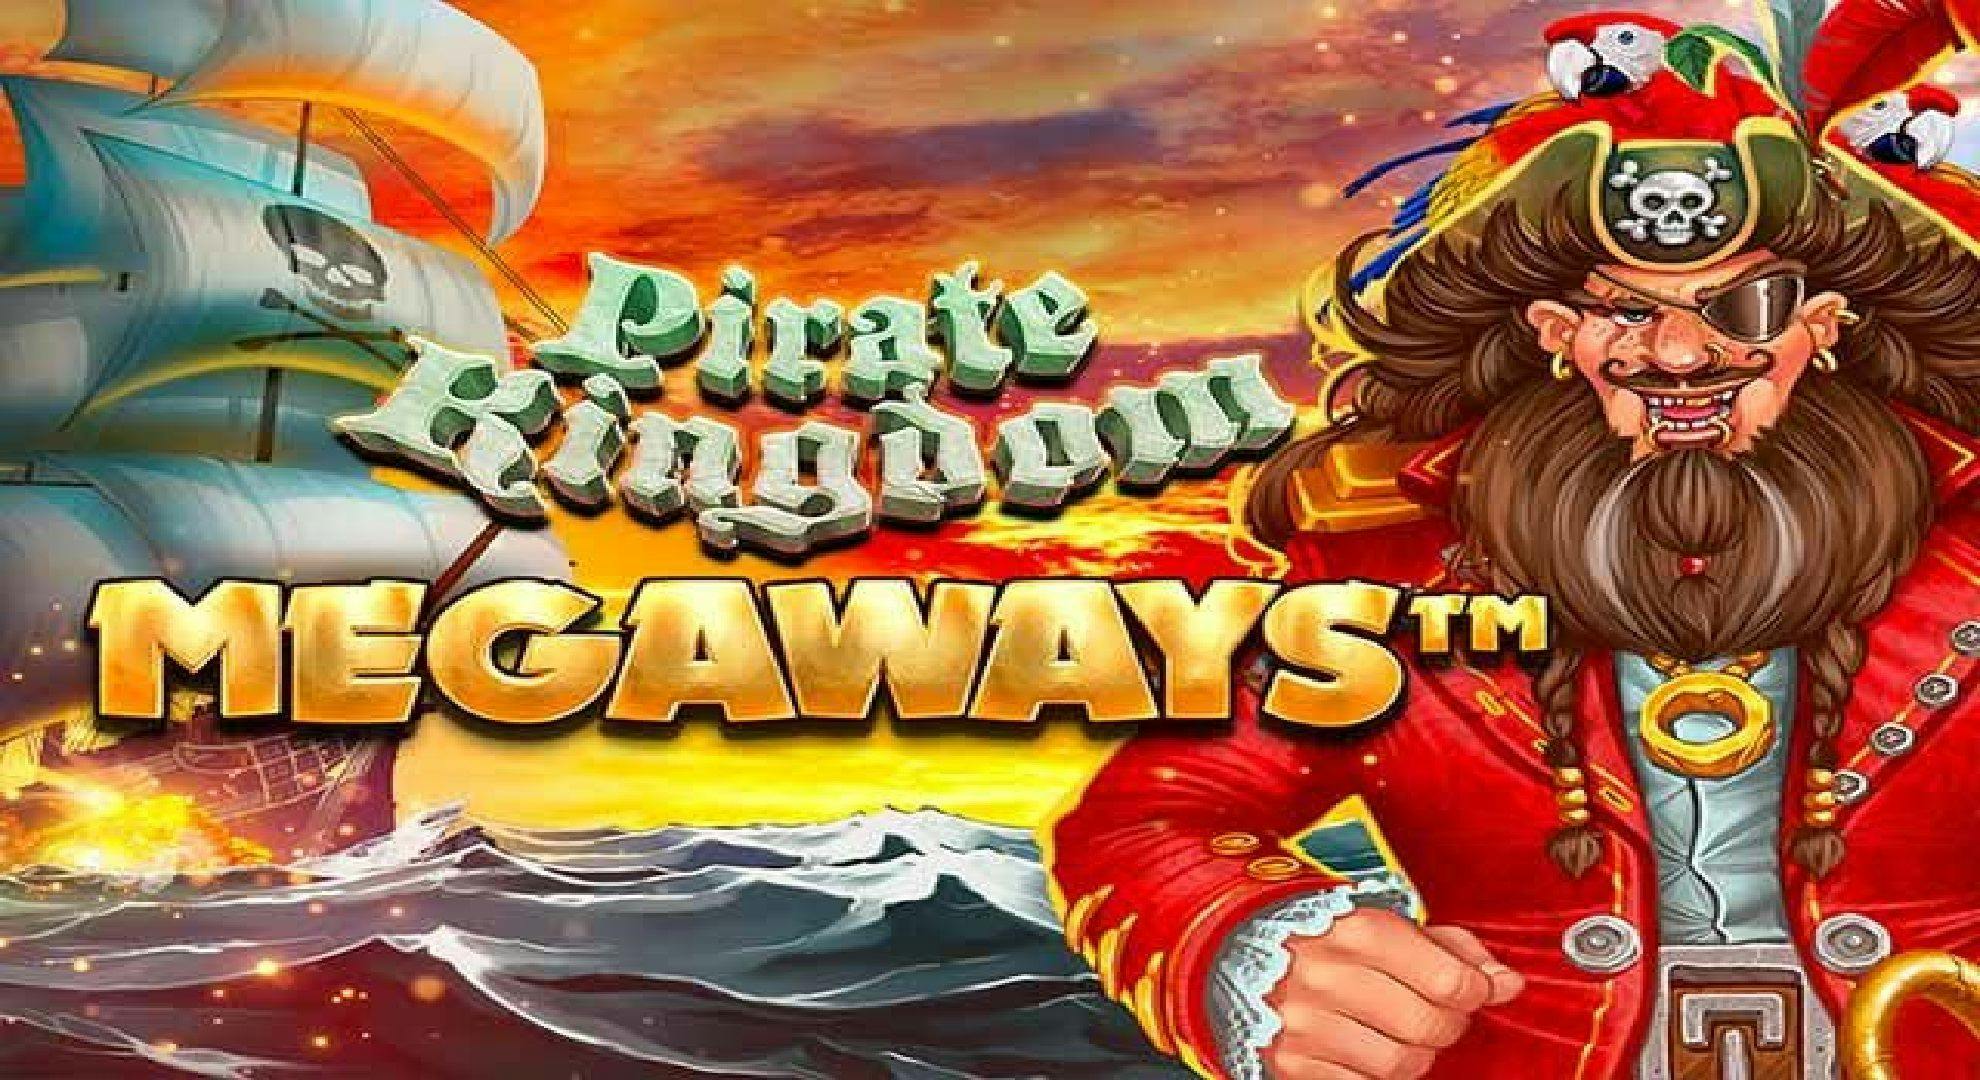 Pirate Kingdom Megaways Slot Online Free Play